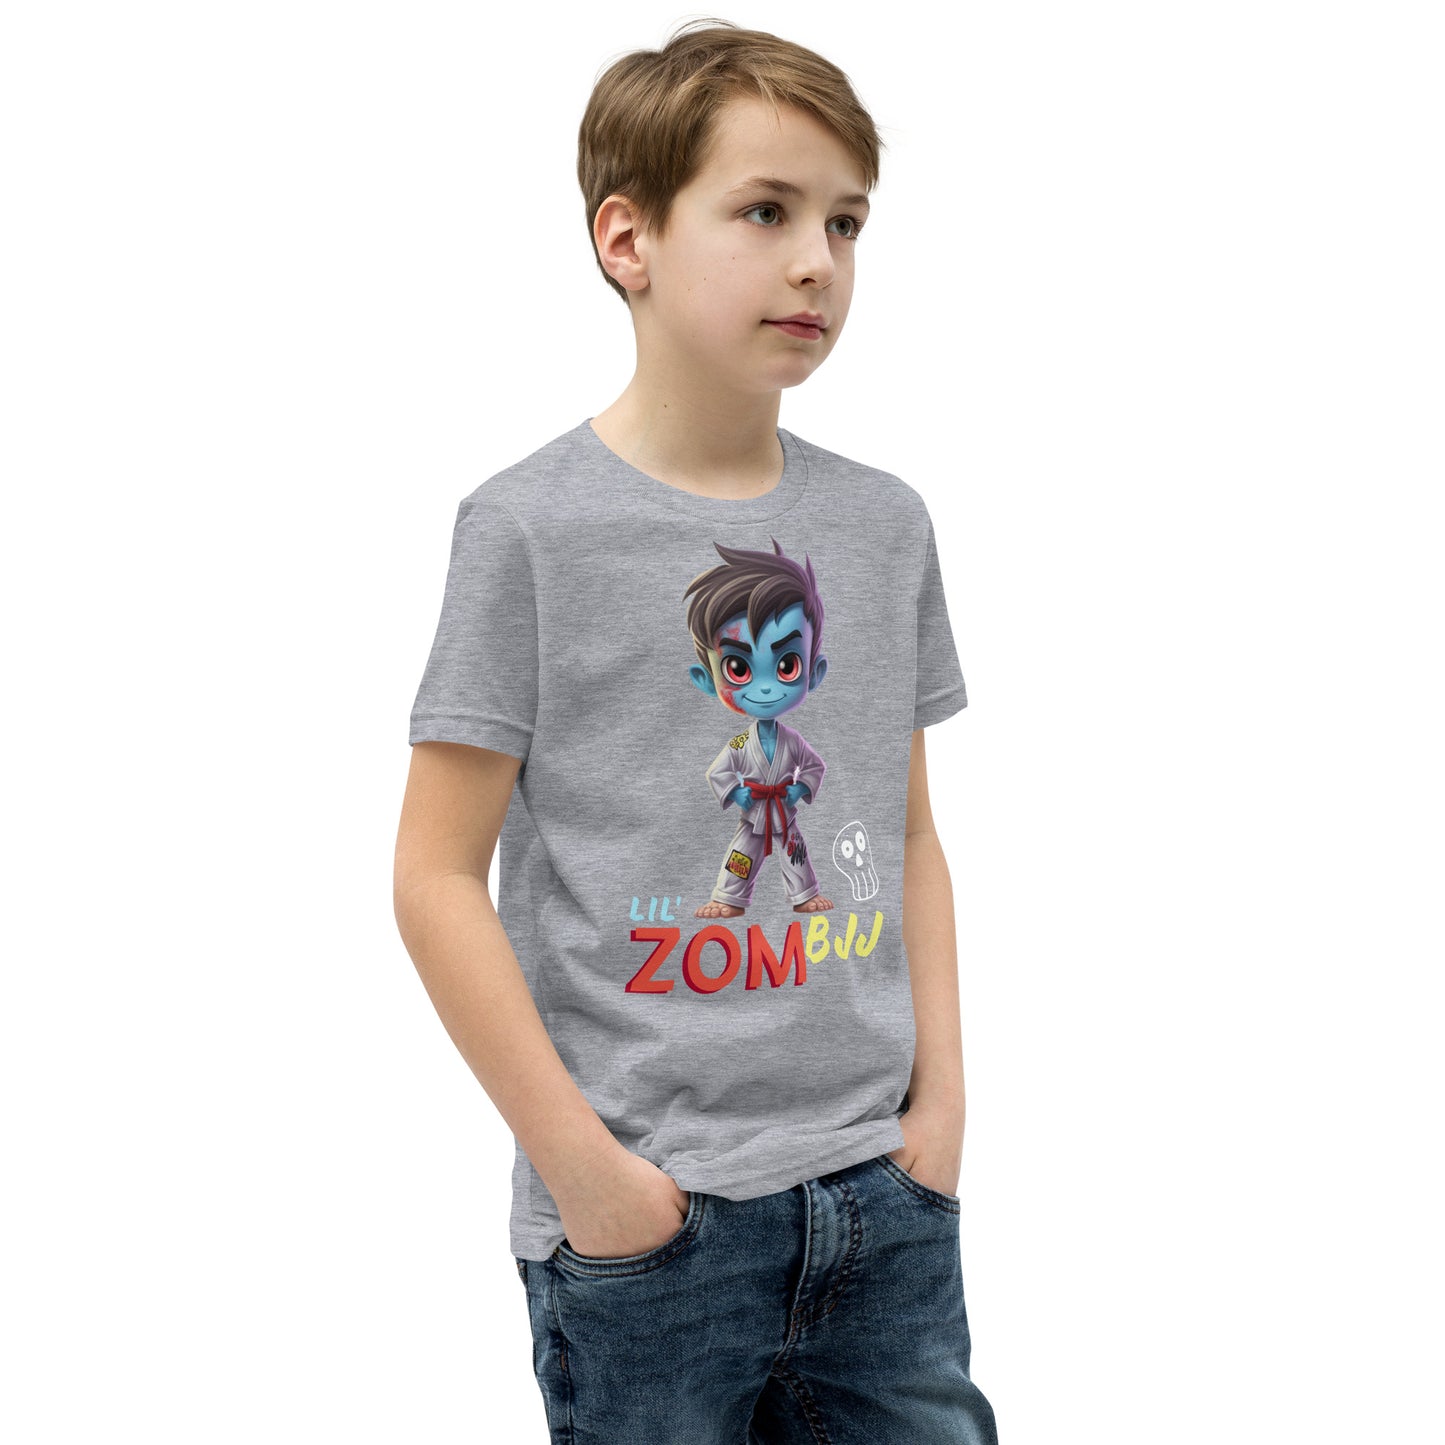 Lil' ZomBJJ T-Shirt